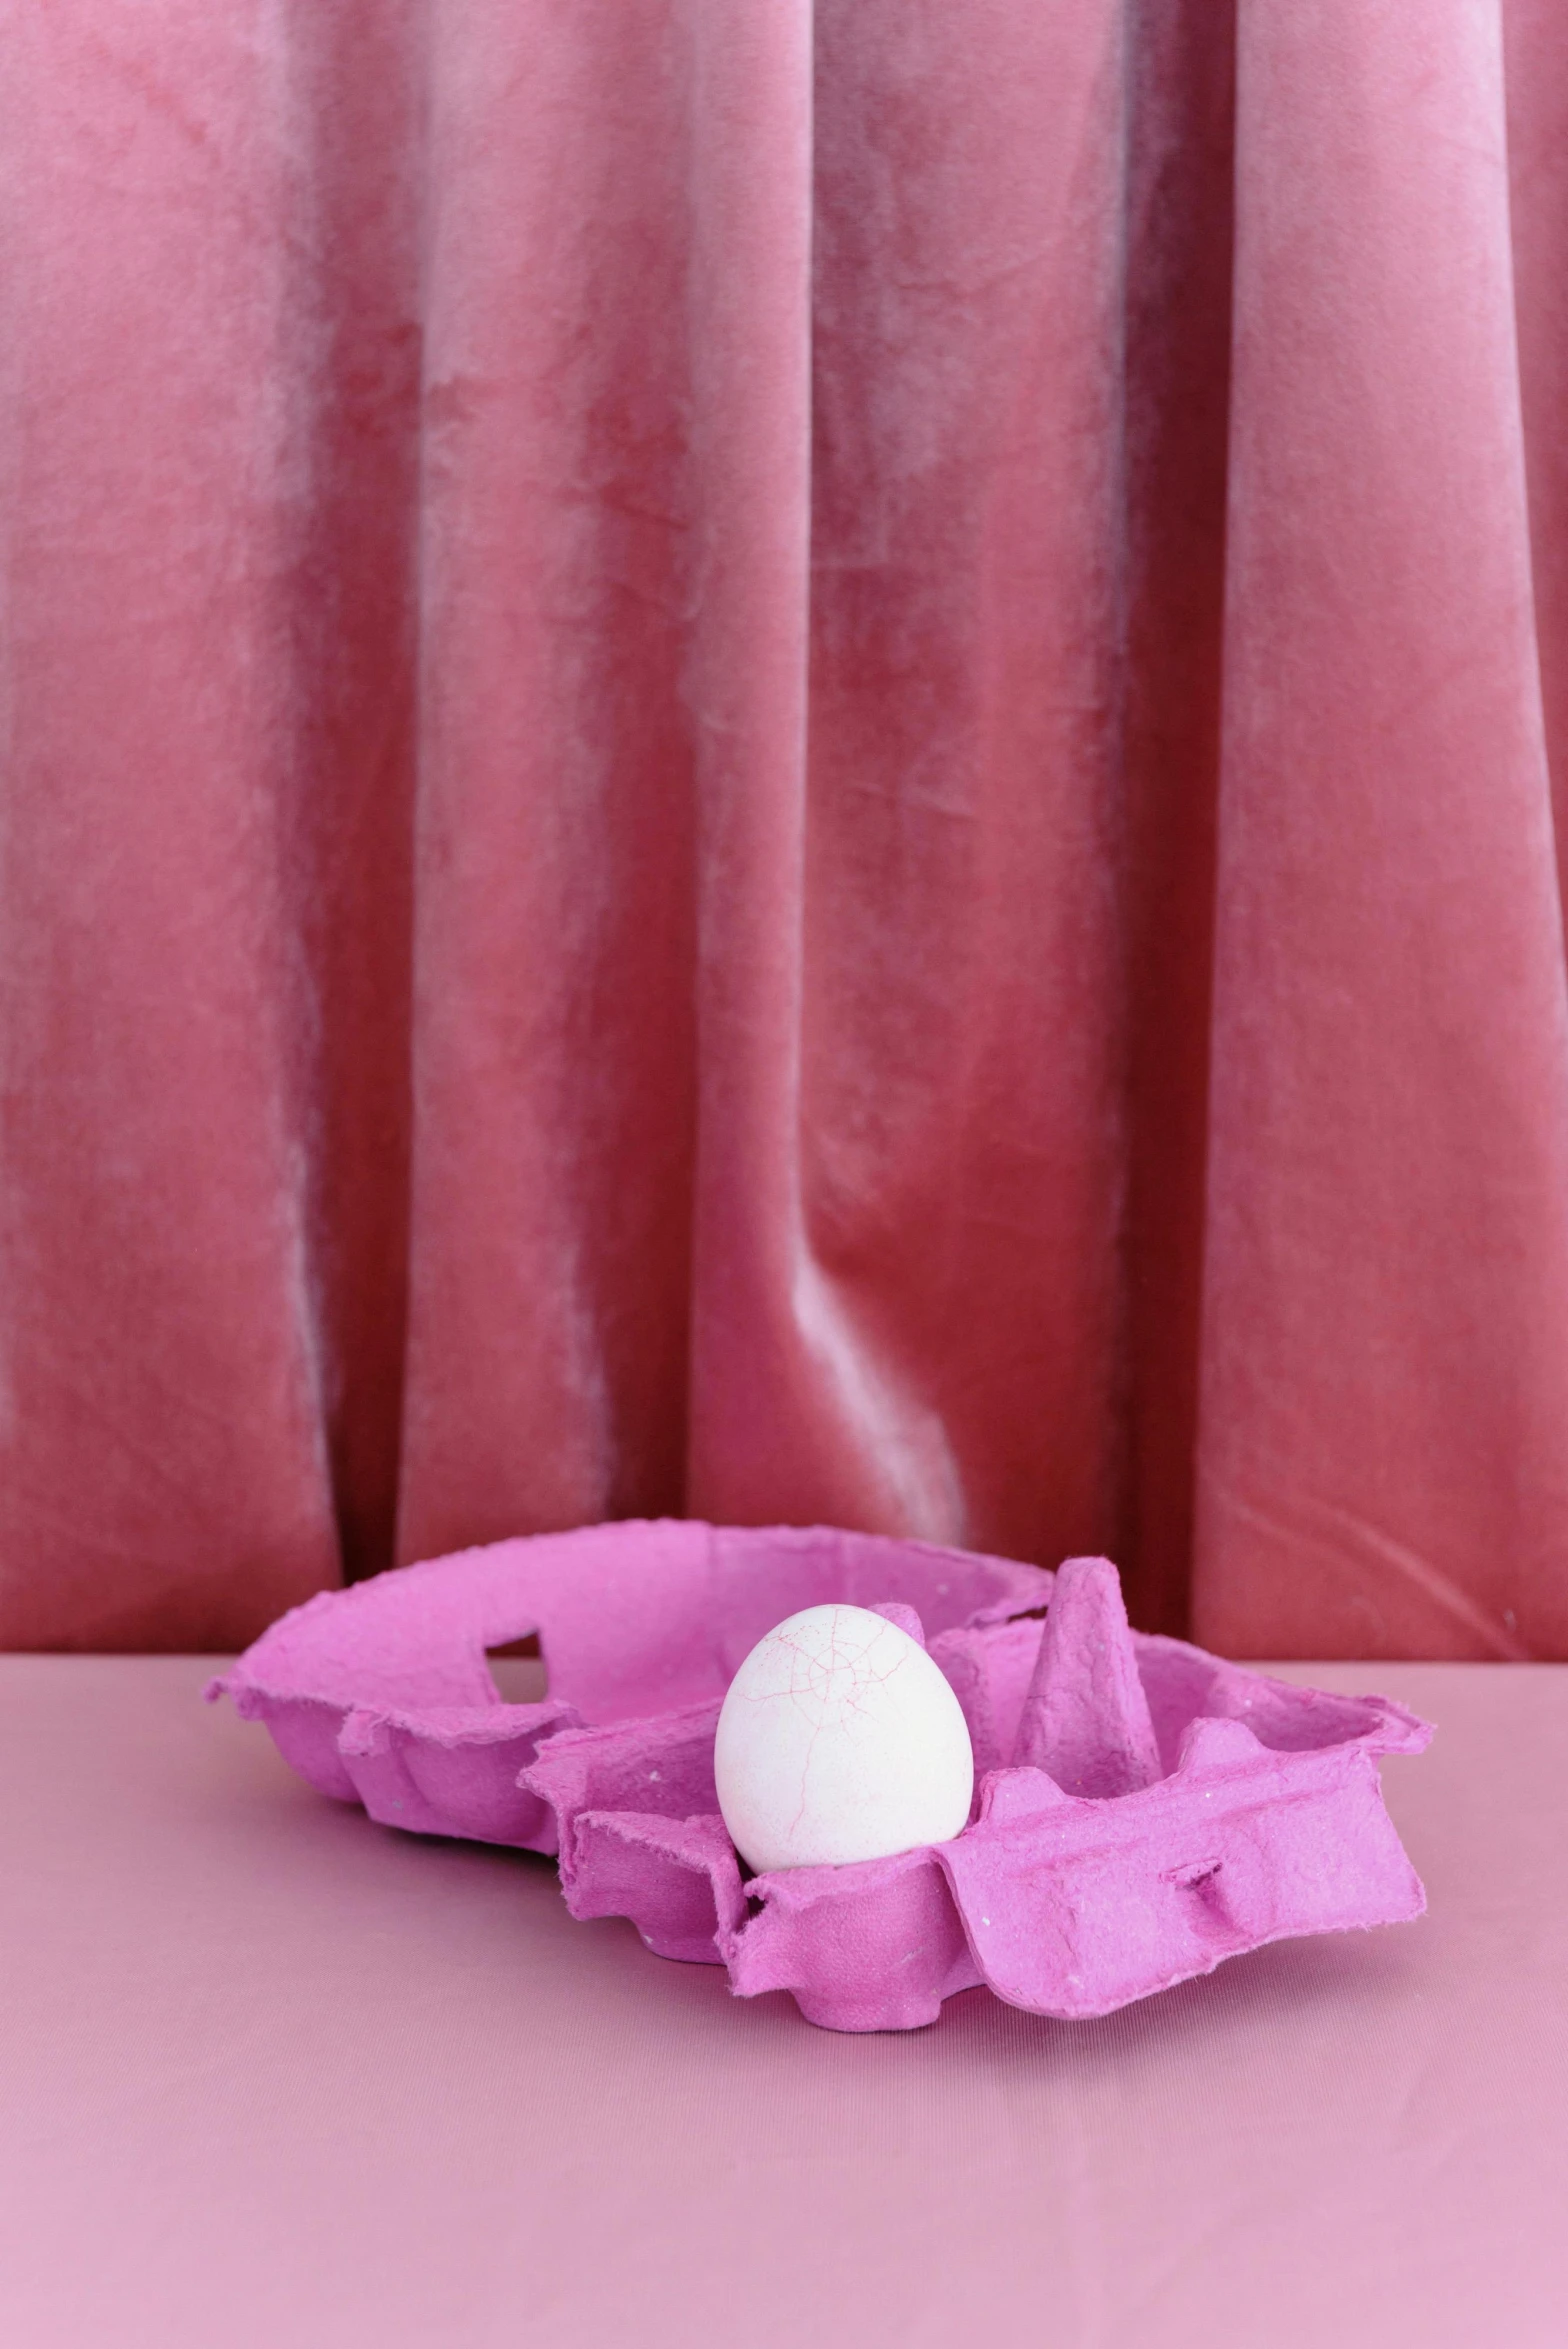 an egg in an egg carton on a table, by Nathalie Rattner, trending on instagram, brightly lit pink room, purple drapery, tissue ornament, velvet